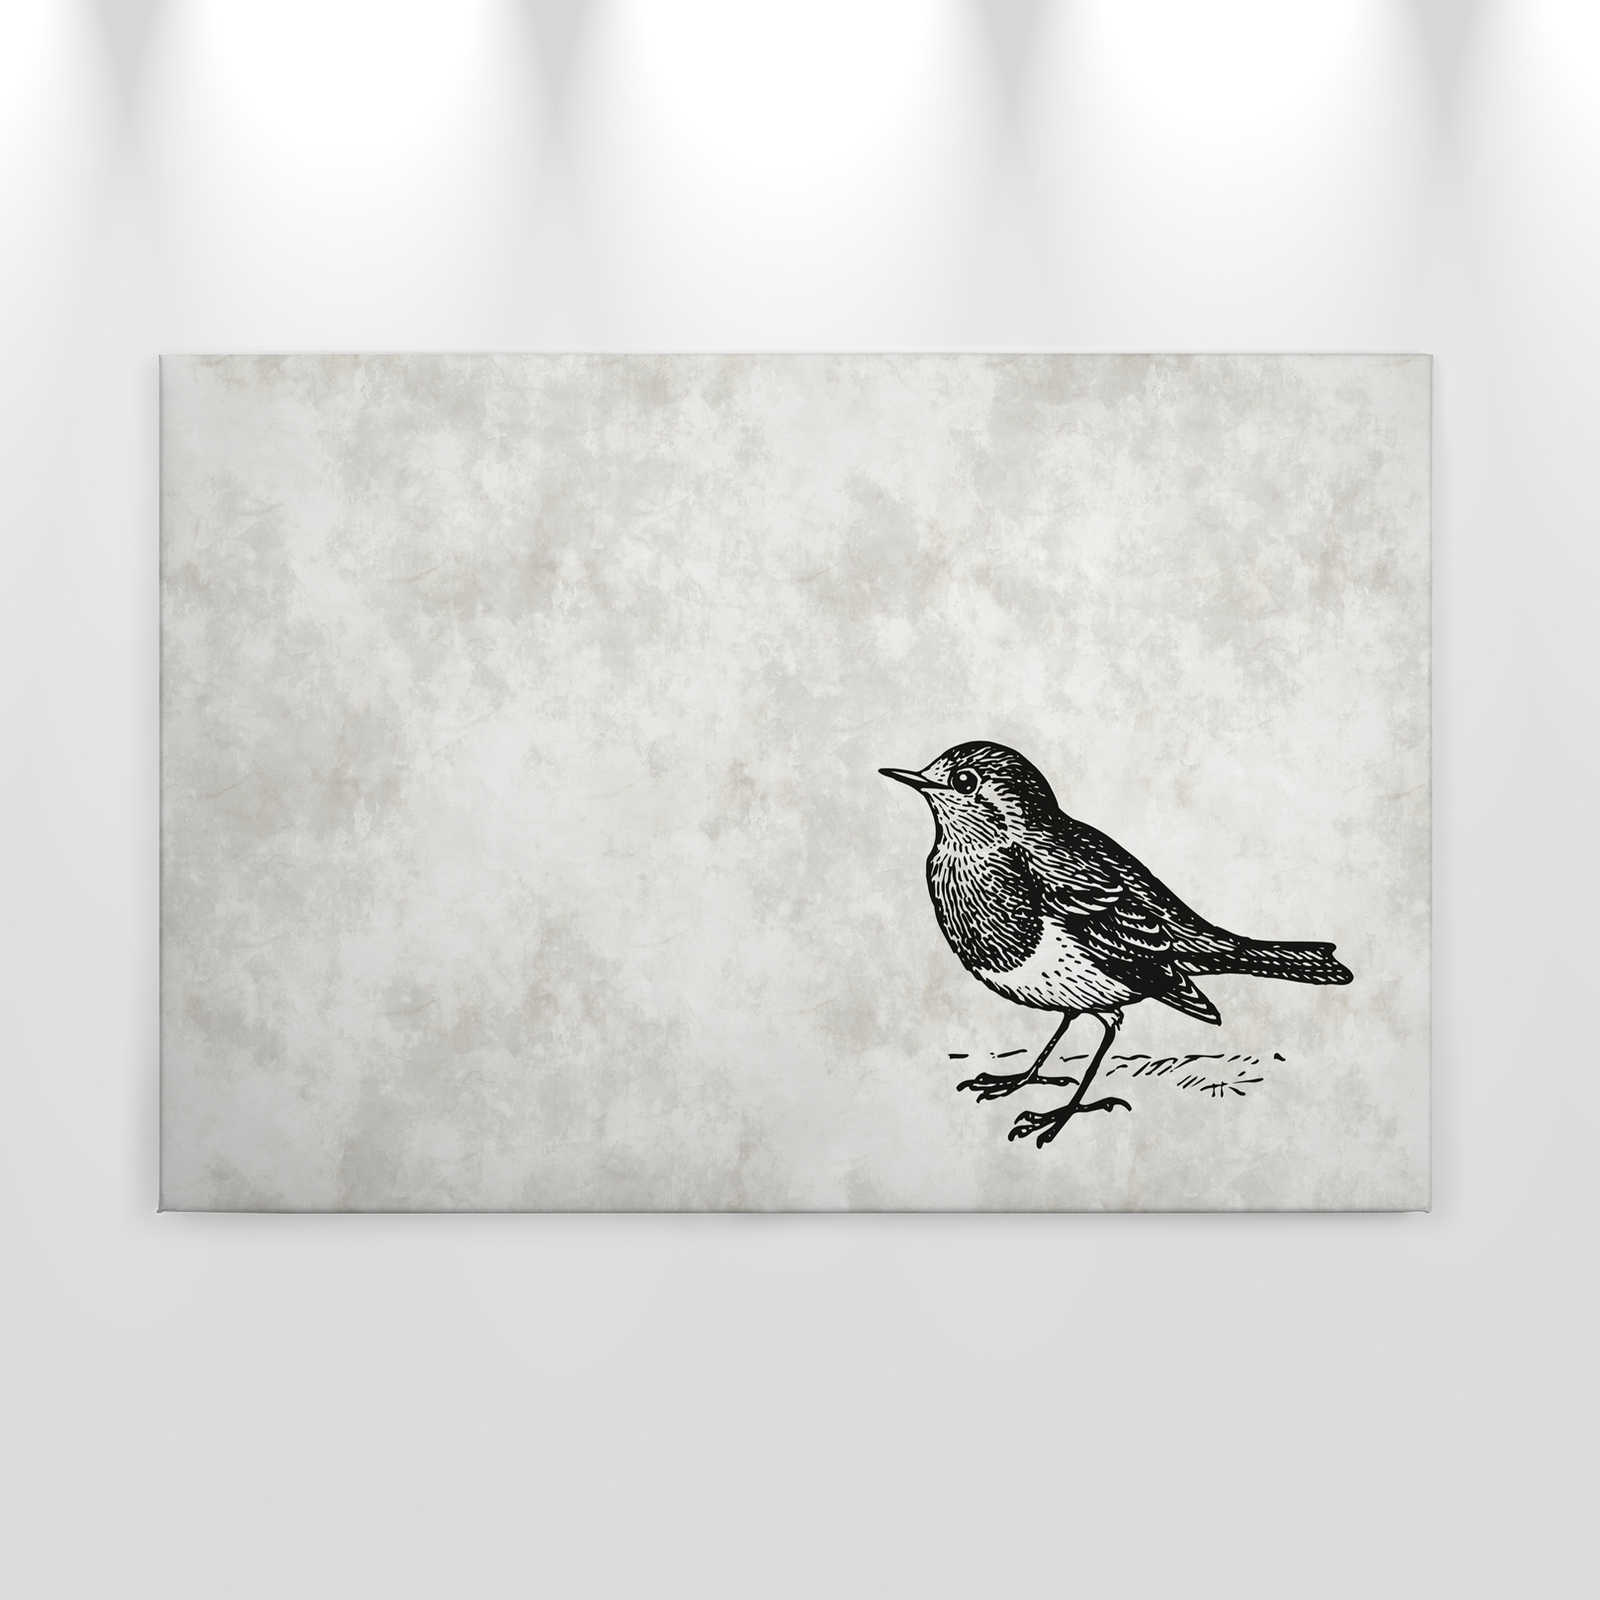             Zwart-wit canvas schilderij met vogel - 0,90 m x 0,60 m
        